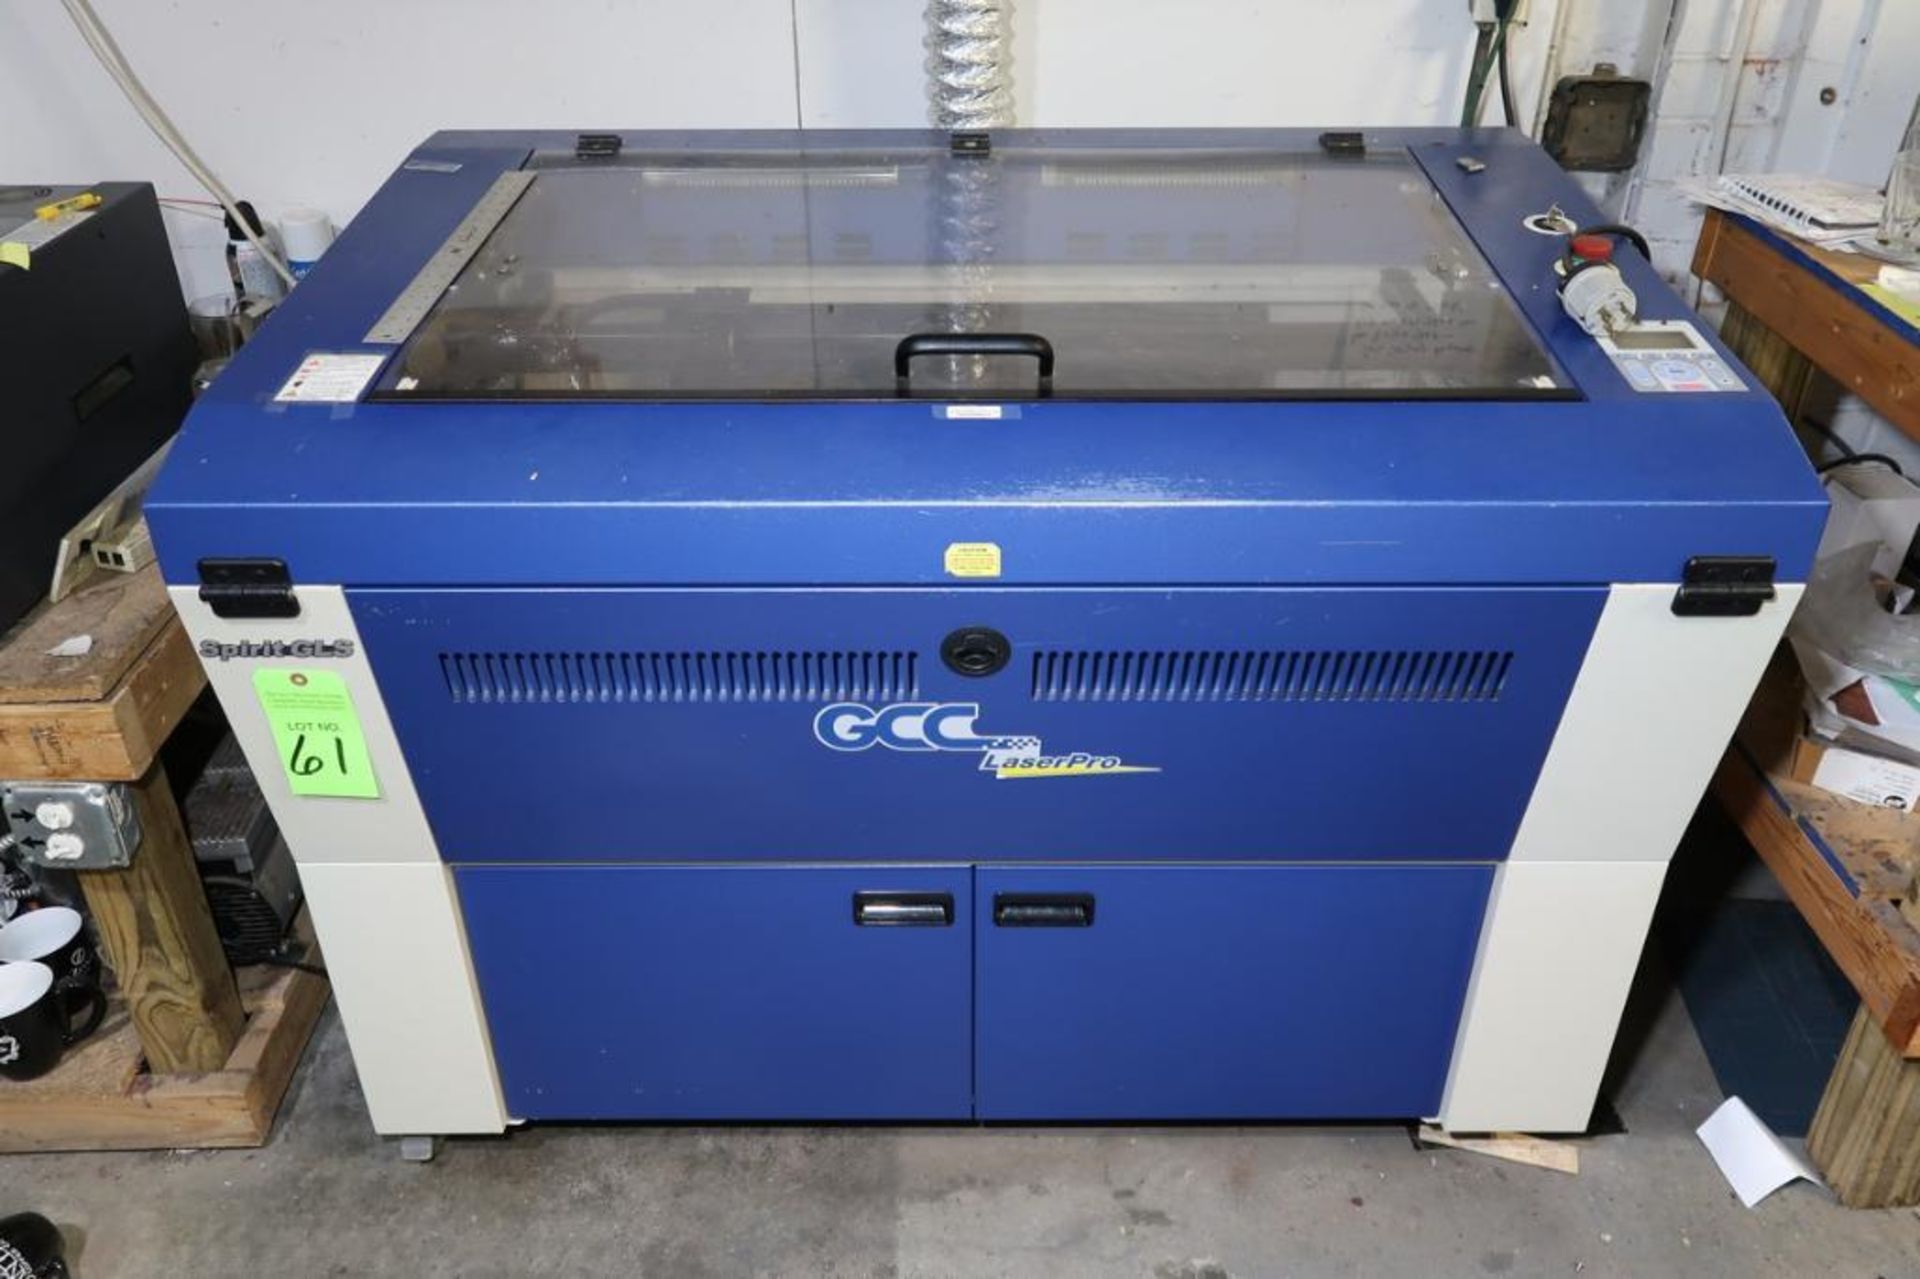 2012 GSC Laser Pro Spirit mdl. GLS-40V Laser Engraving Machine